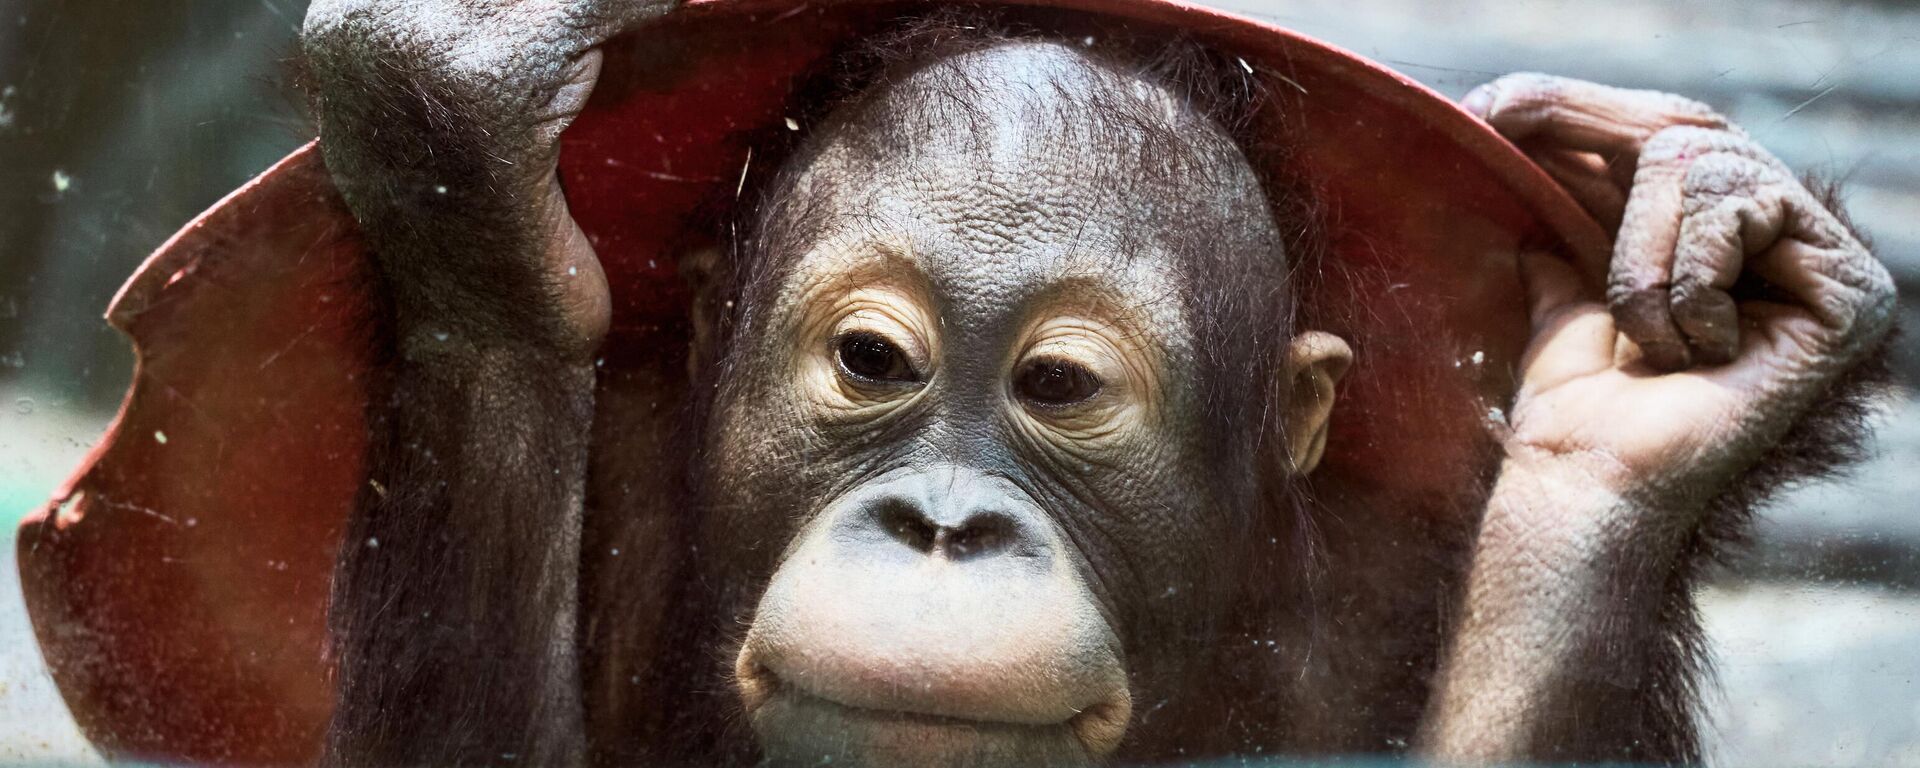 Cría de orangután en el zoológico de Moscú  - Sputnik Mundo, 1920, 31.12.2021